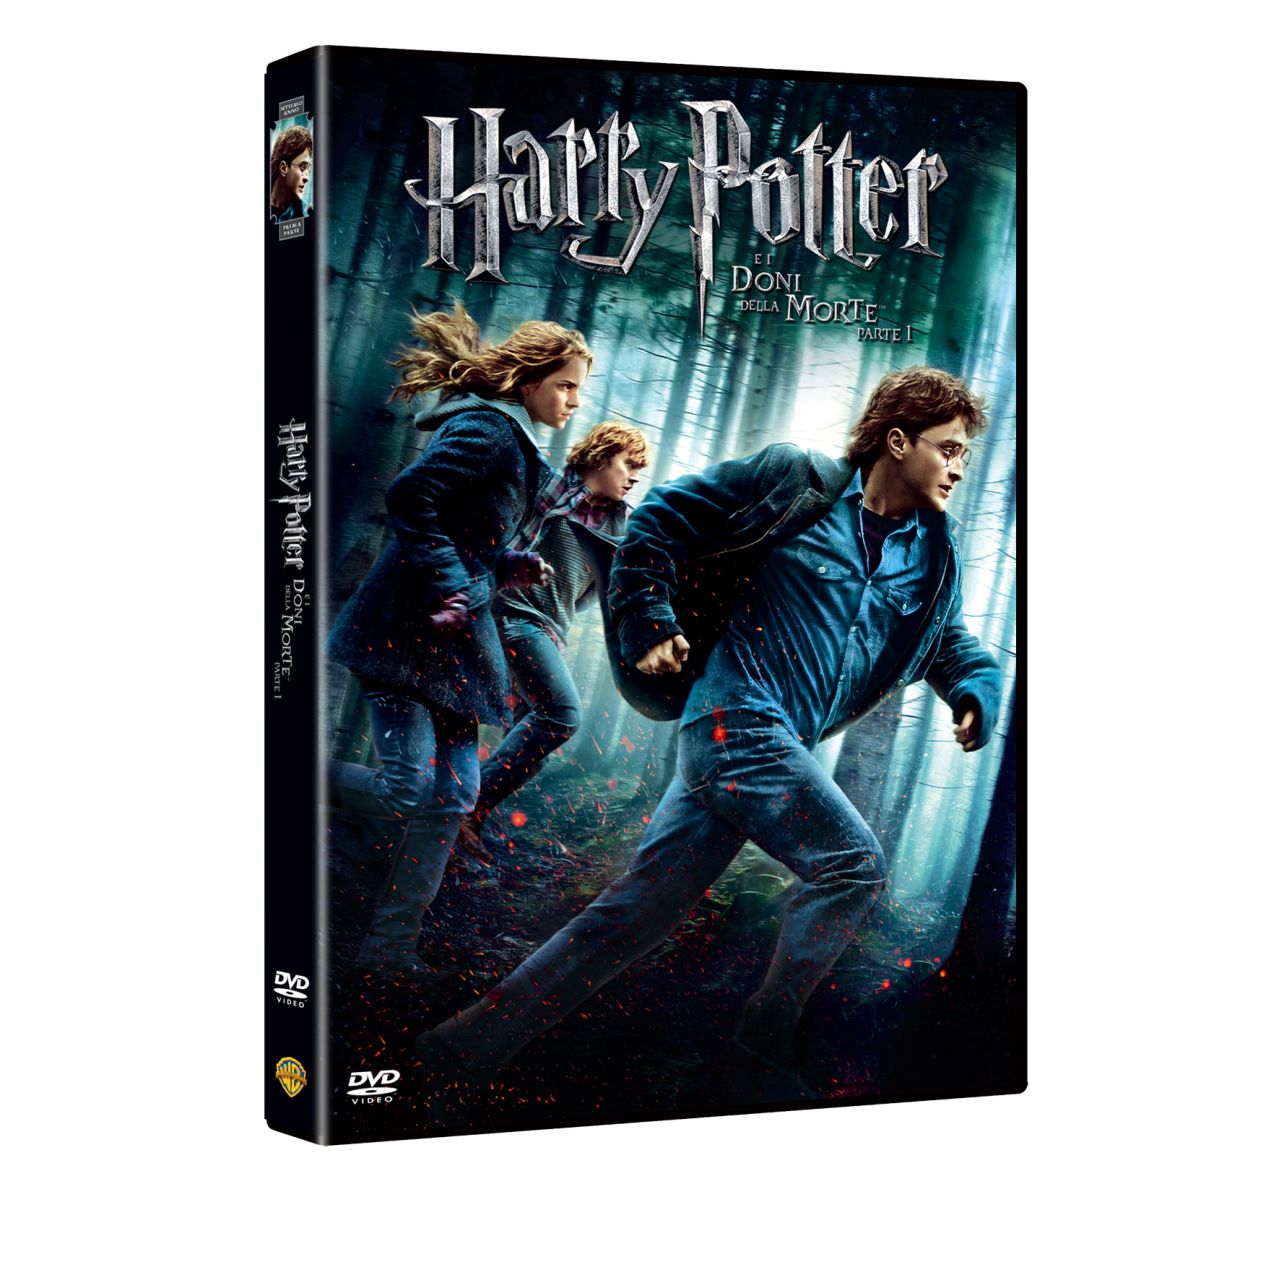 Harry Potter e i doni della morte, parte prima Dvd e gioco online Fantasy